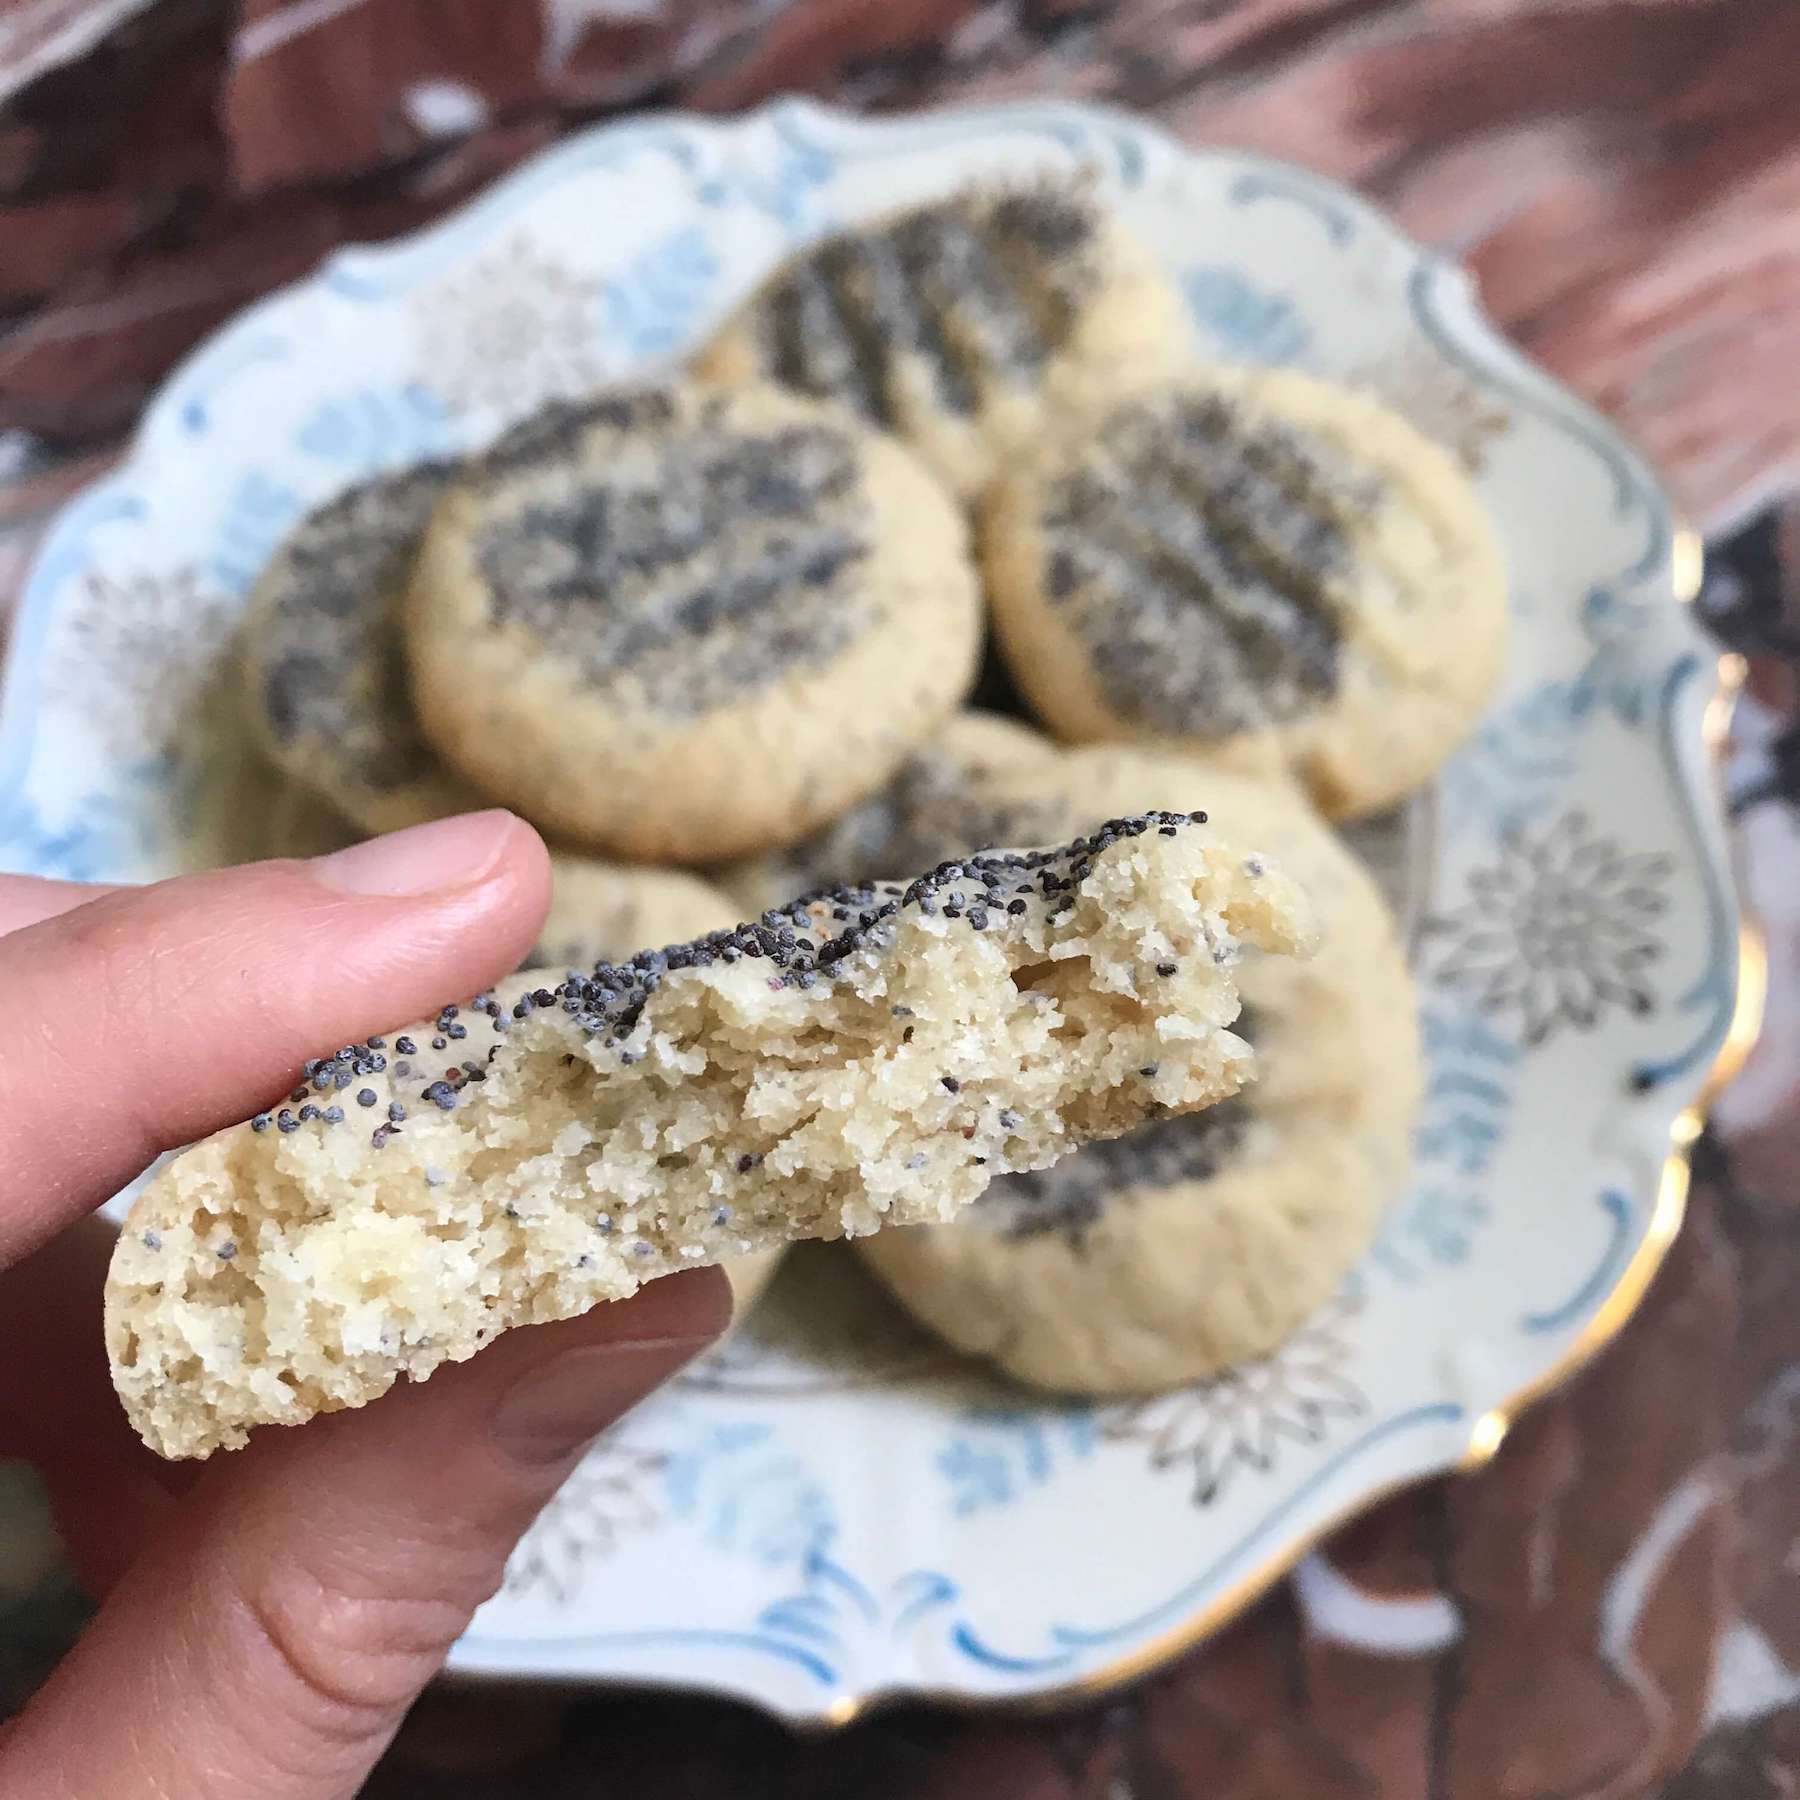 lemon poppyseed cookies